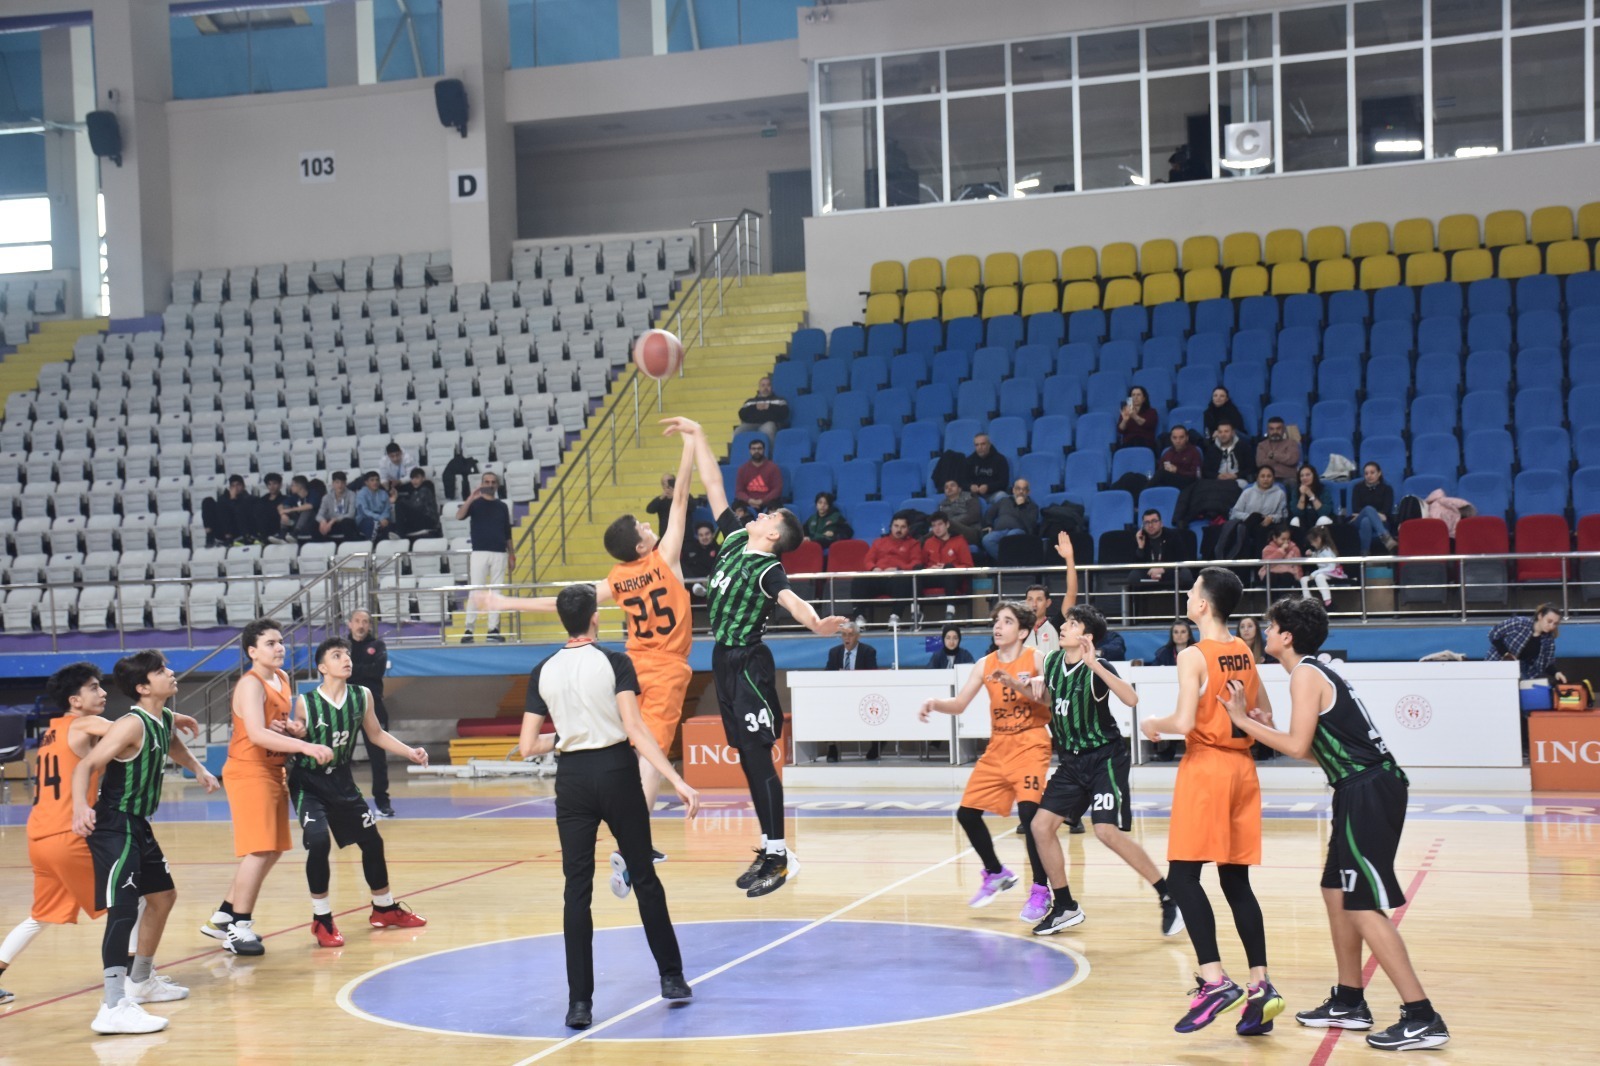 Basketbol U-14 2. Bölge Şampiyonası Afyonkarahisar’da başladı